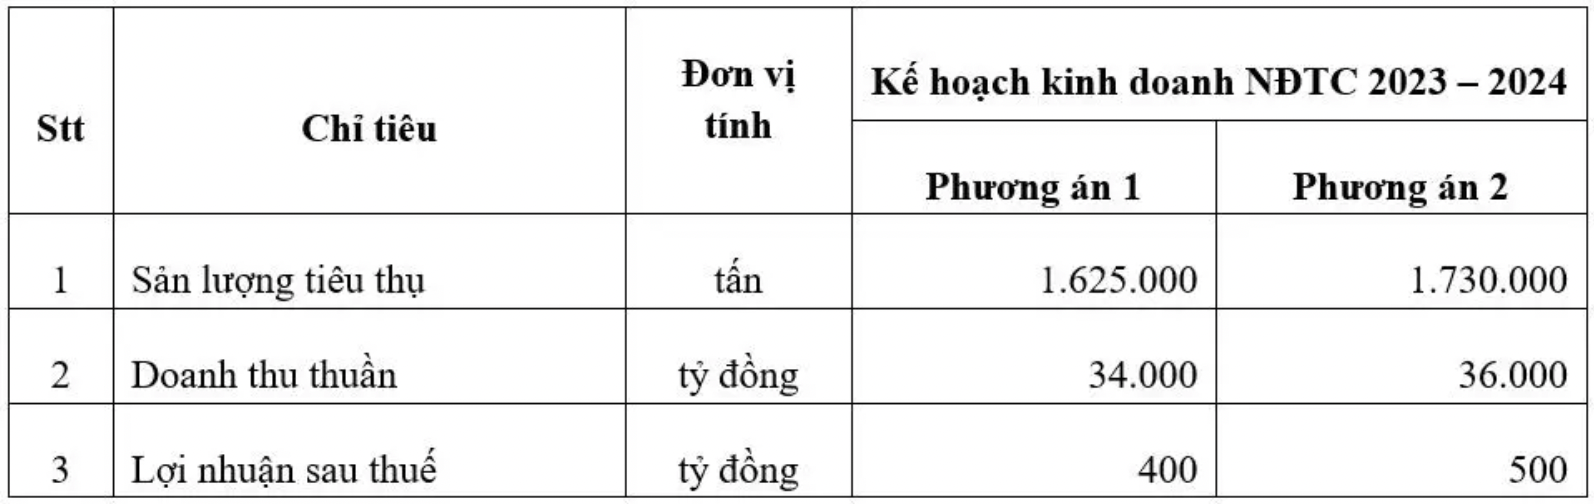 Thép cán nóng HRC Trung Quốc giá rẻ tràn vào Việt Nam, lượng nhập tăng 200% sau 2 tháng: Hoa Sen (HSG) được dự báo tăng 25% lợi nhuận - Ảnh 1.